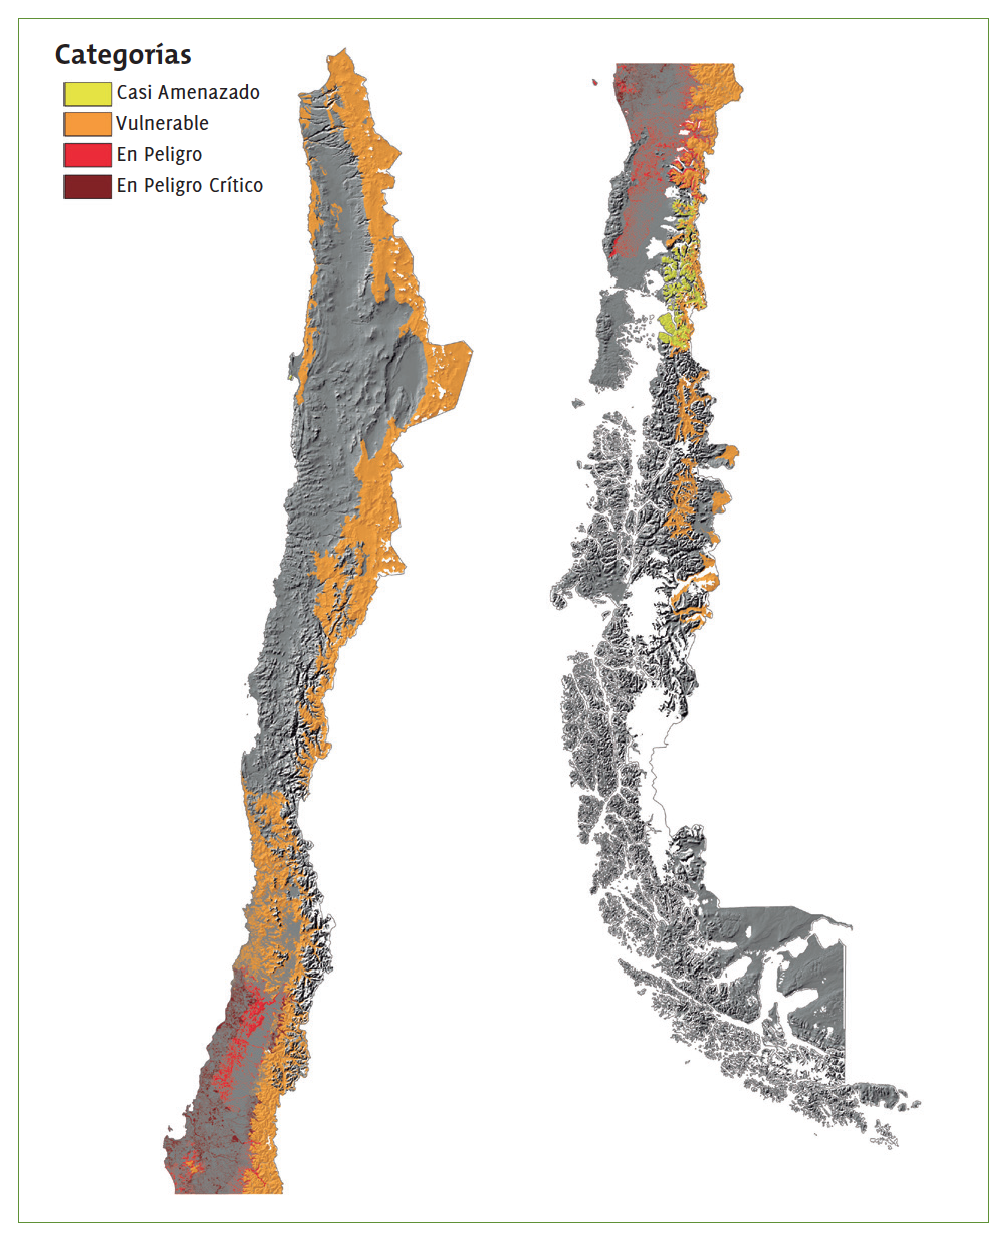 Estado de conservación de los ecosistemas terrestres de Chile (2017)